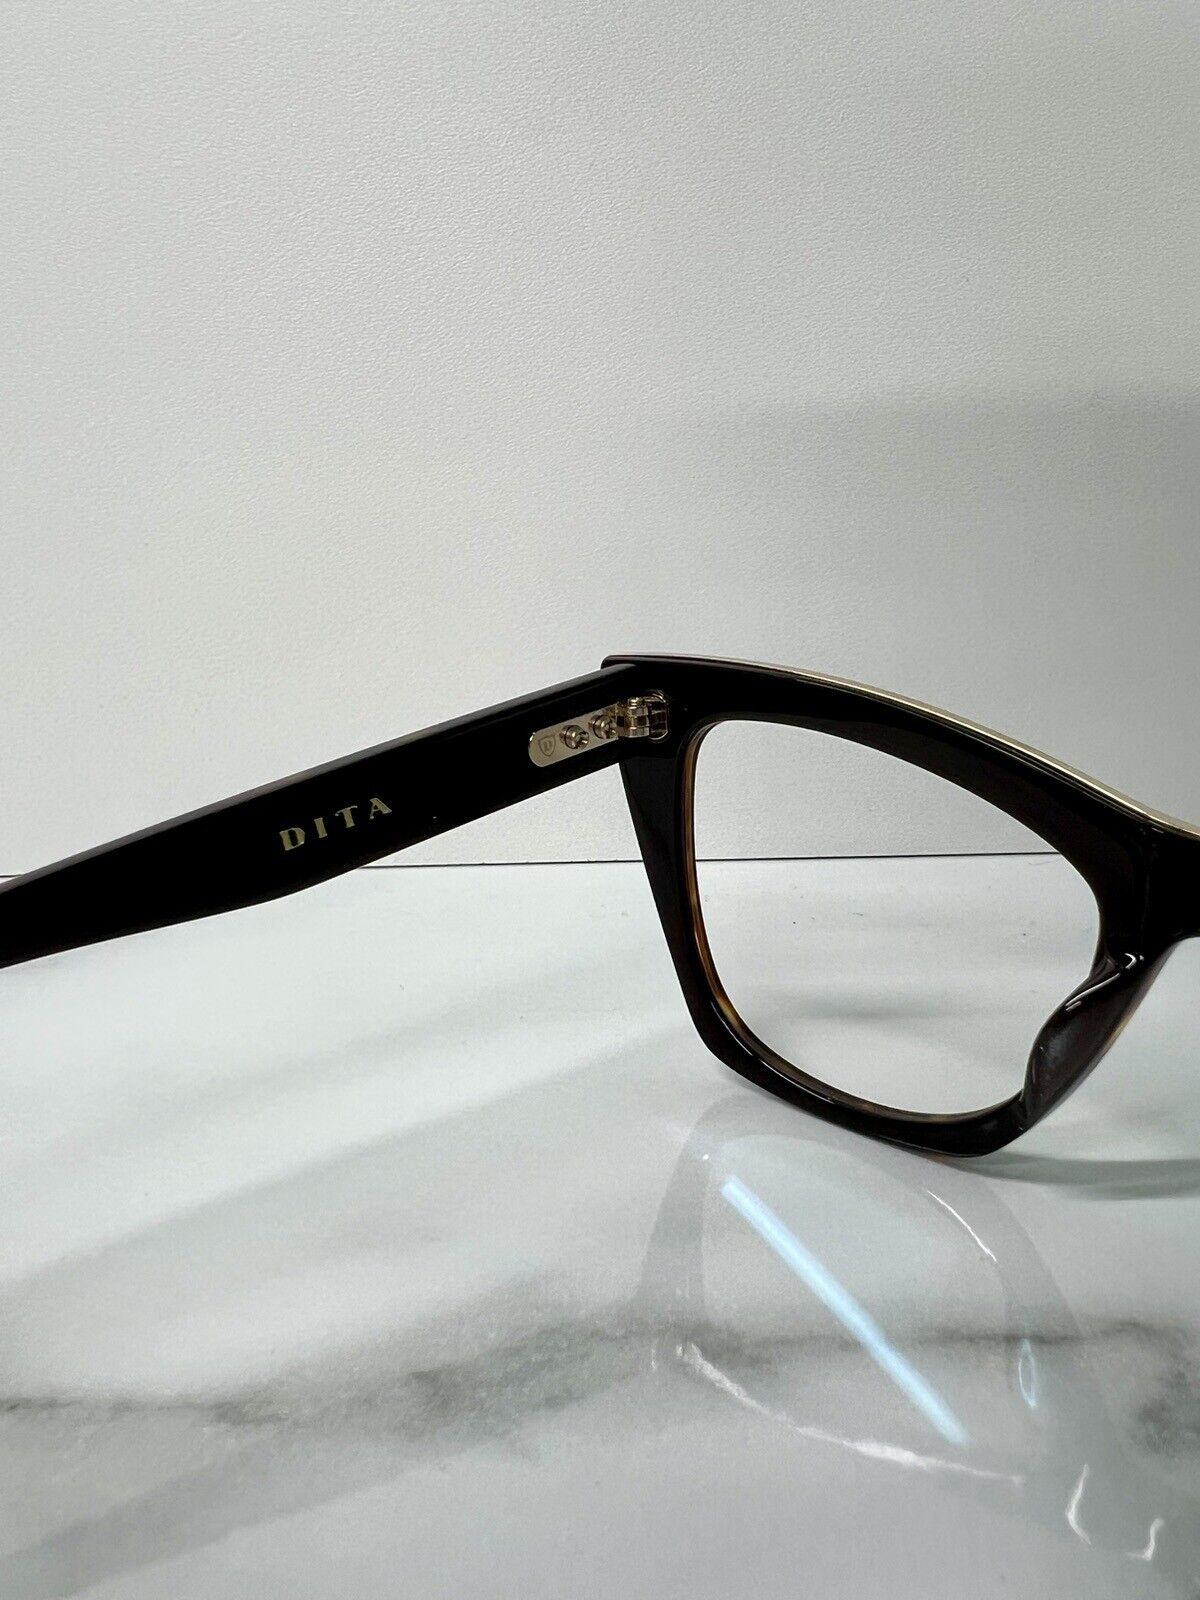 Dita Showgoer Glasses Frames Designer Eyeglasses Tortoise Shell